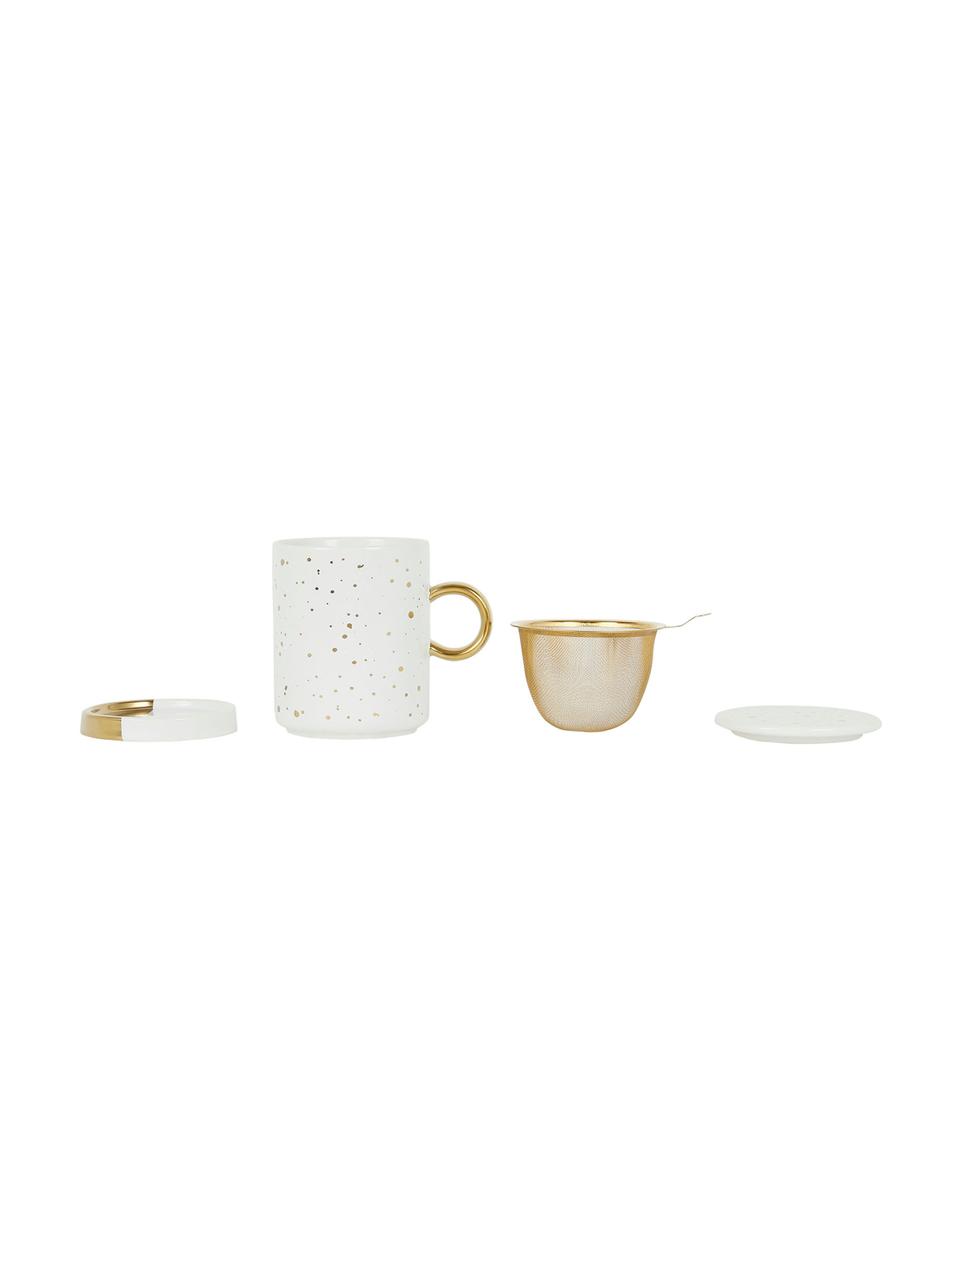 Taza de té con colador, tapadera y platito Astre, Gres, Blanco, dorado, Ø 9 x Al 12 cm, 350 ml